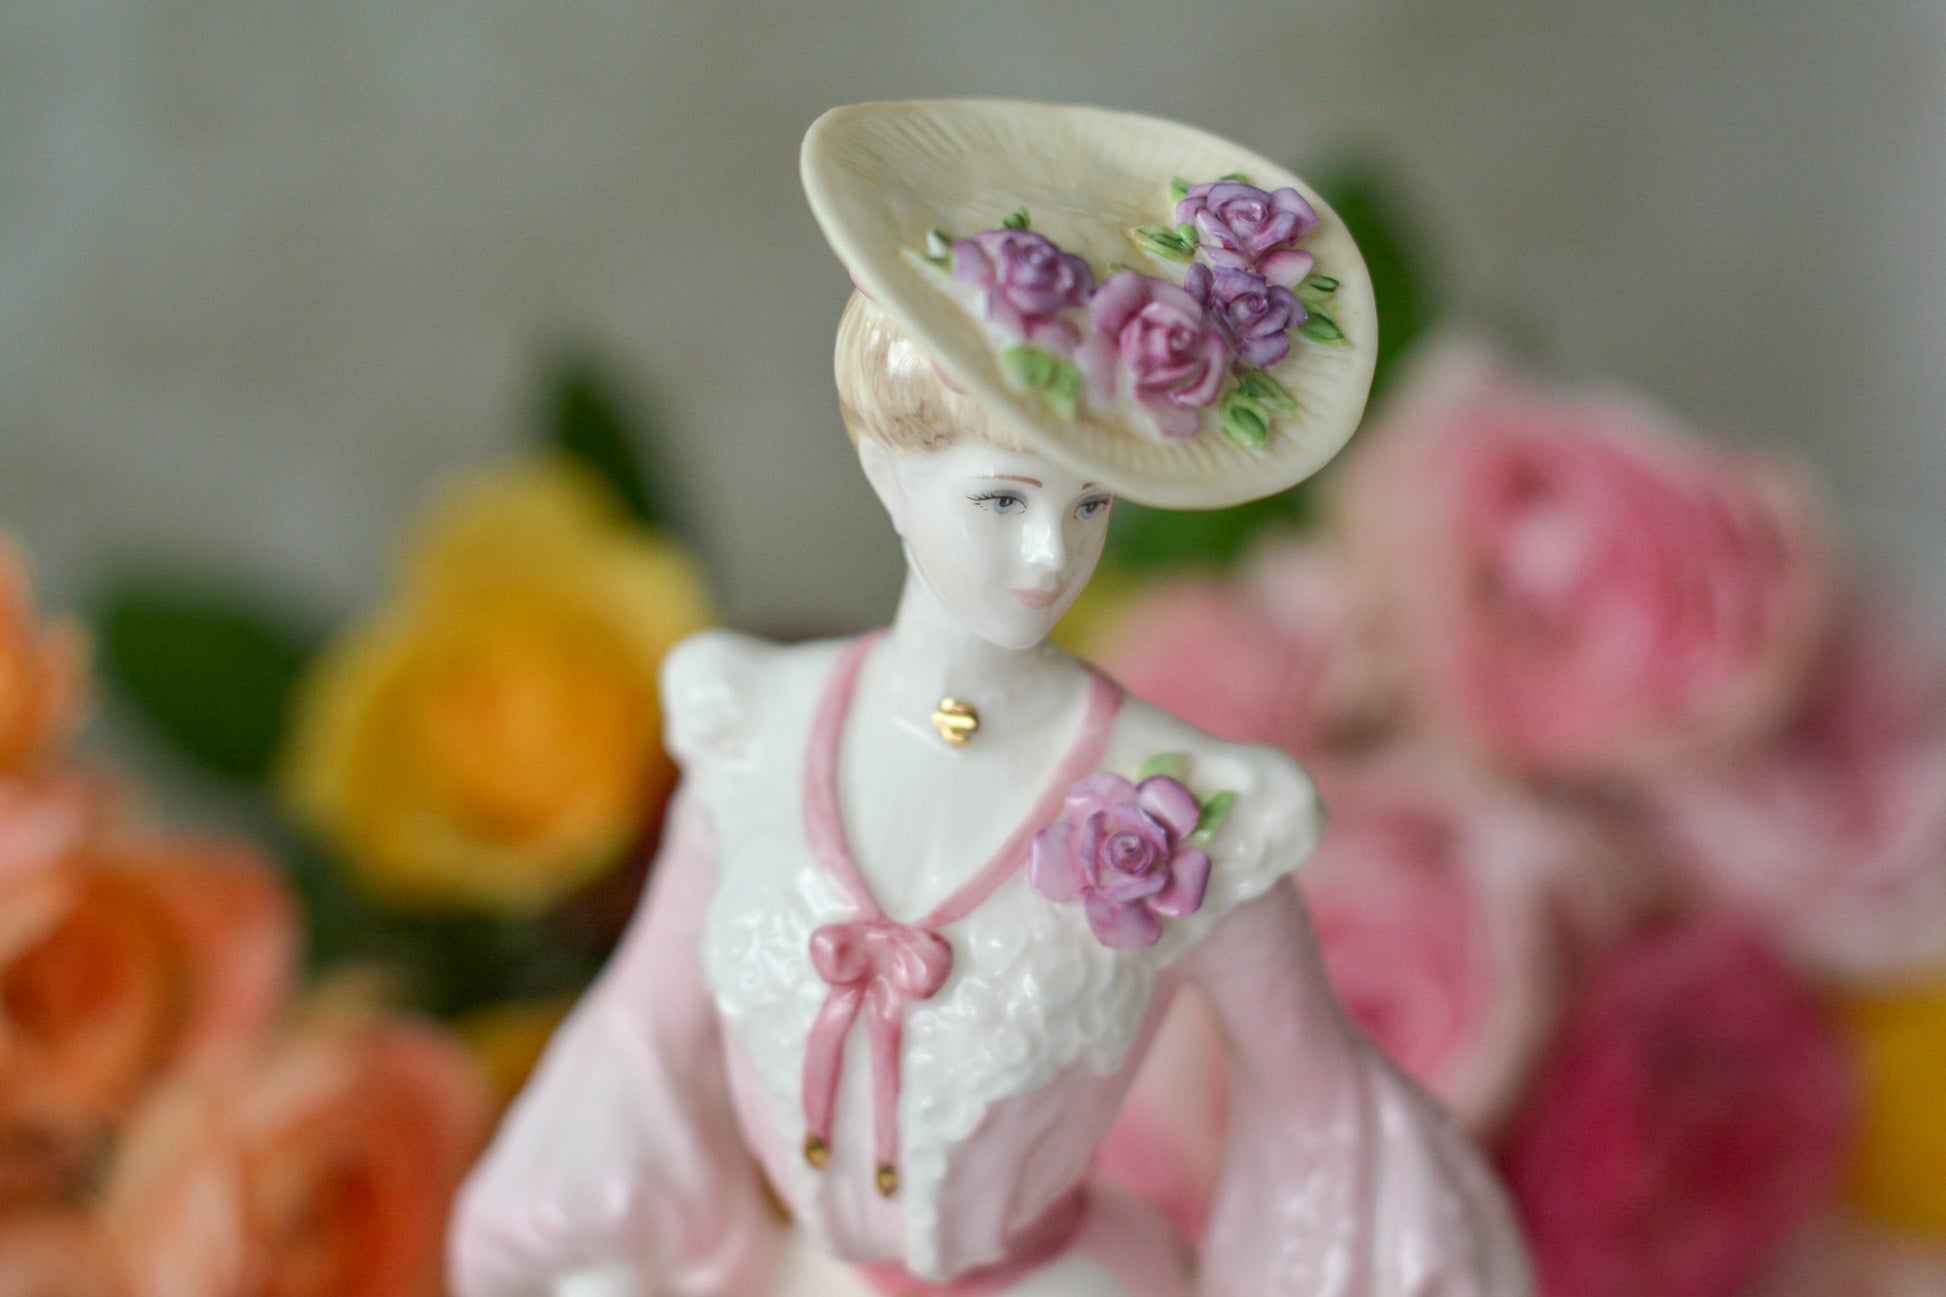 コールポートの美しいフィギュリン。フィギュリンは陶器で作られた人形です。ハンドペイントで絵付され、一つ一つ表情が異なります。